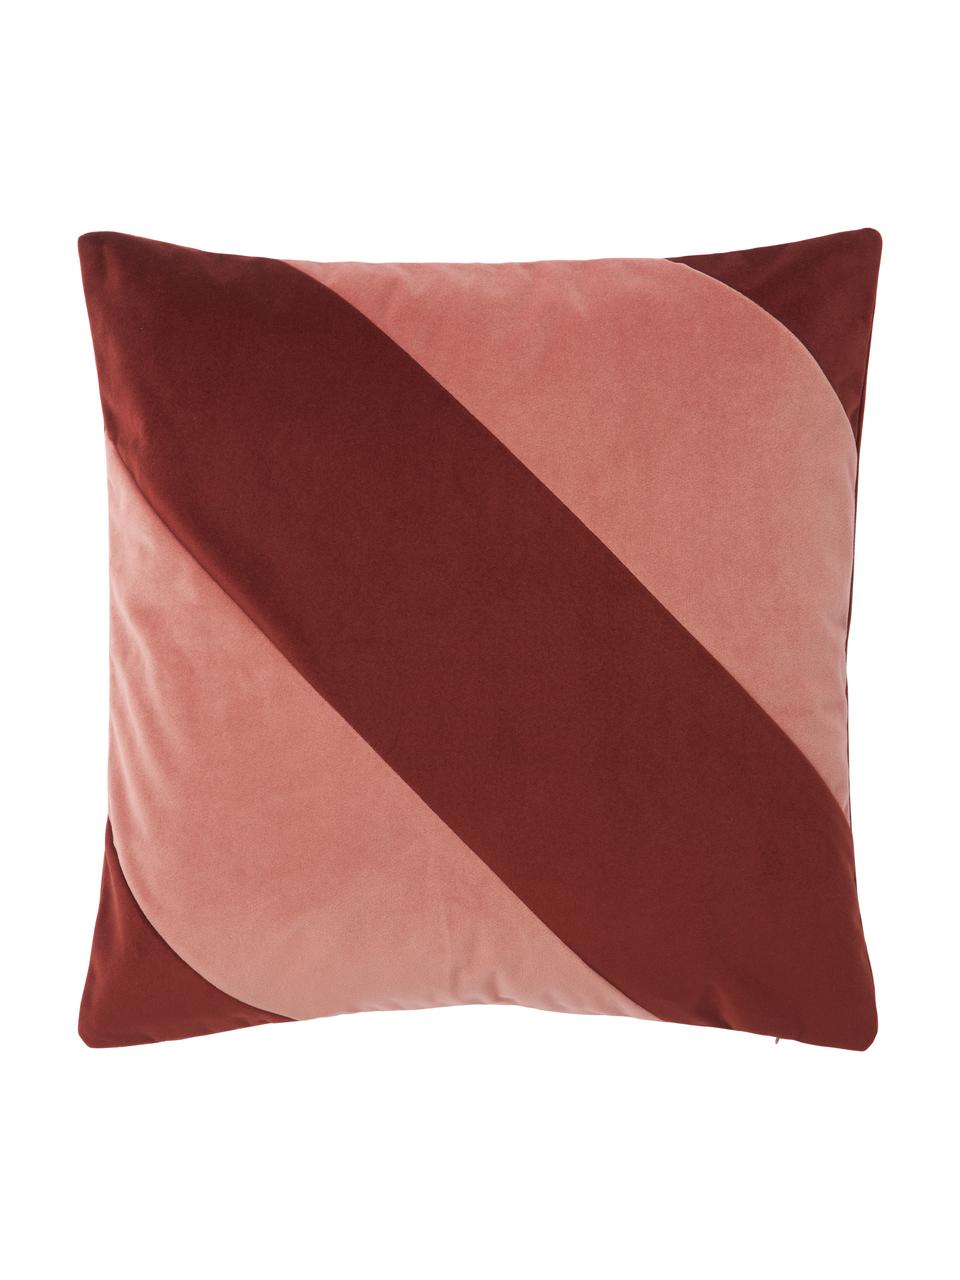 Poszewka na poduszkę z aksamitu Lenia, 100% aksamit poliestrowy, Brudny różowy, czerwony, S 45 x D 45 cm